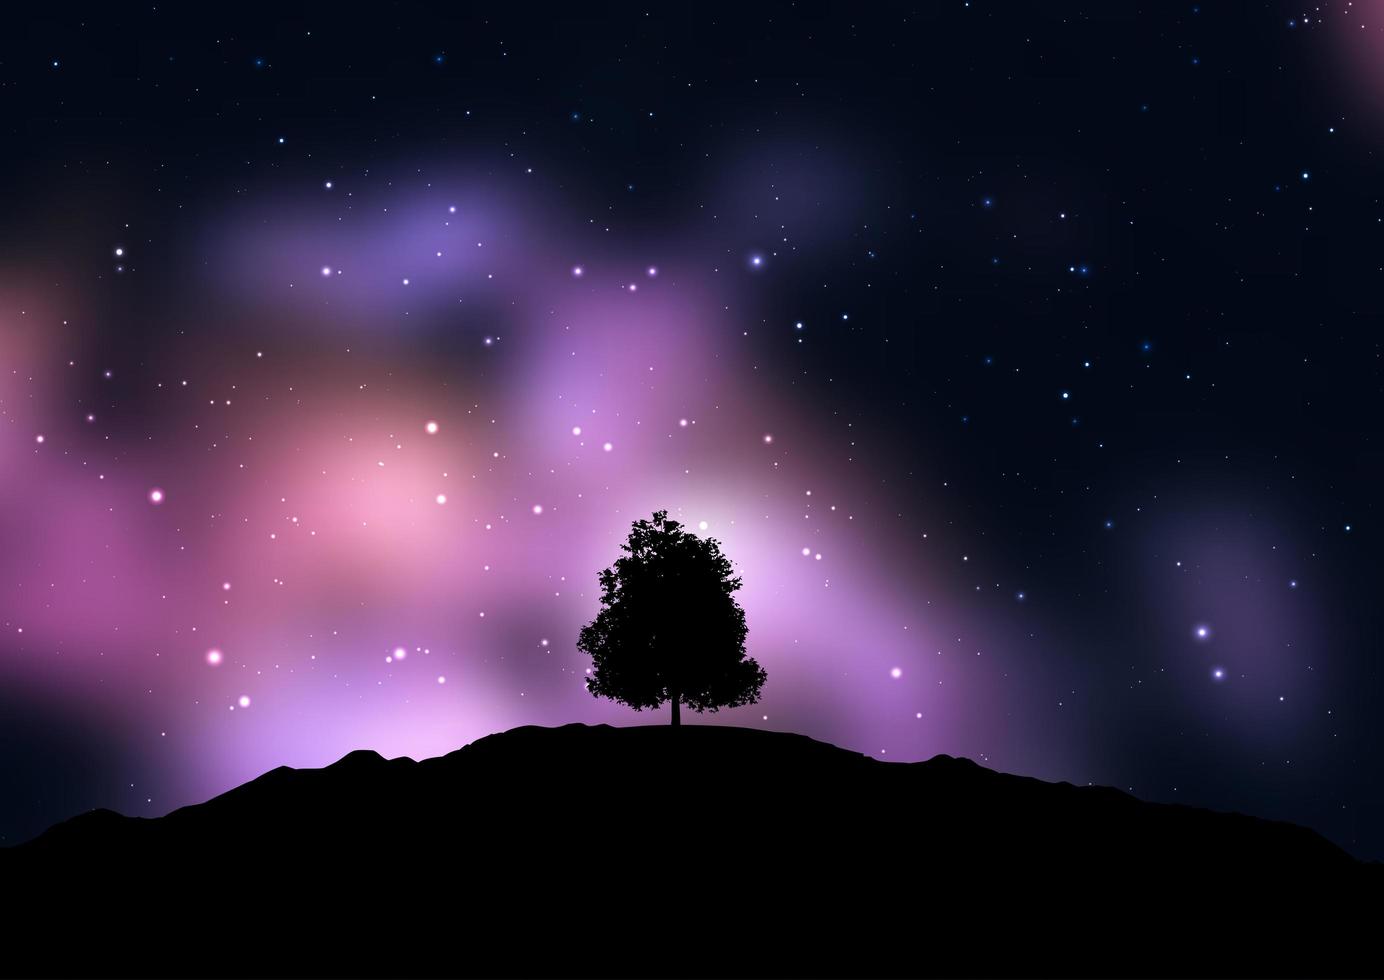 Baum gegen einen Sternenhimmel silhouettiert vektor